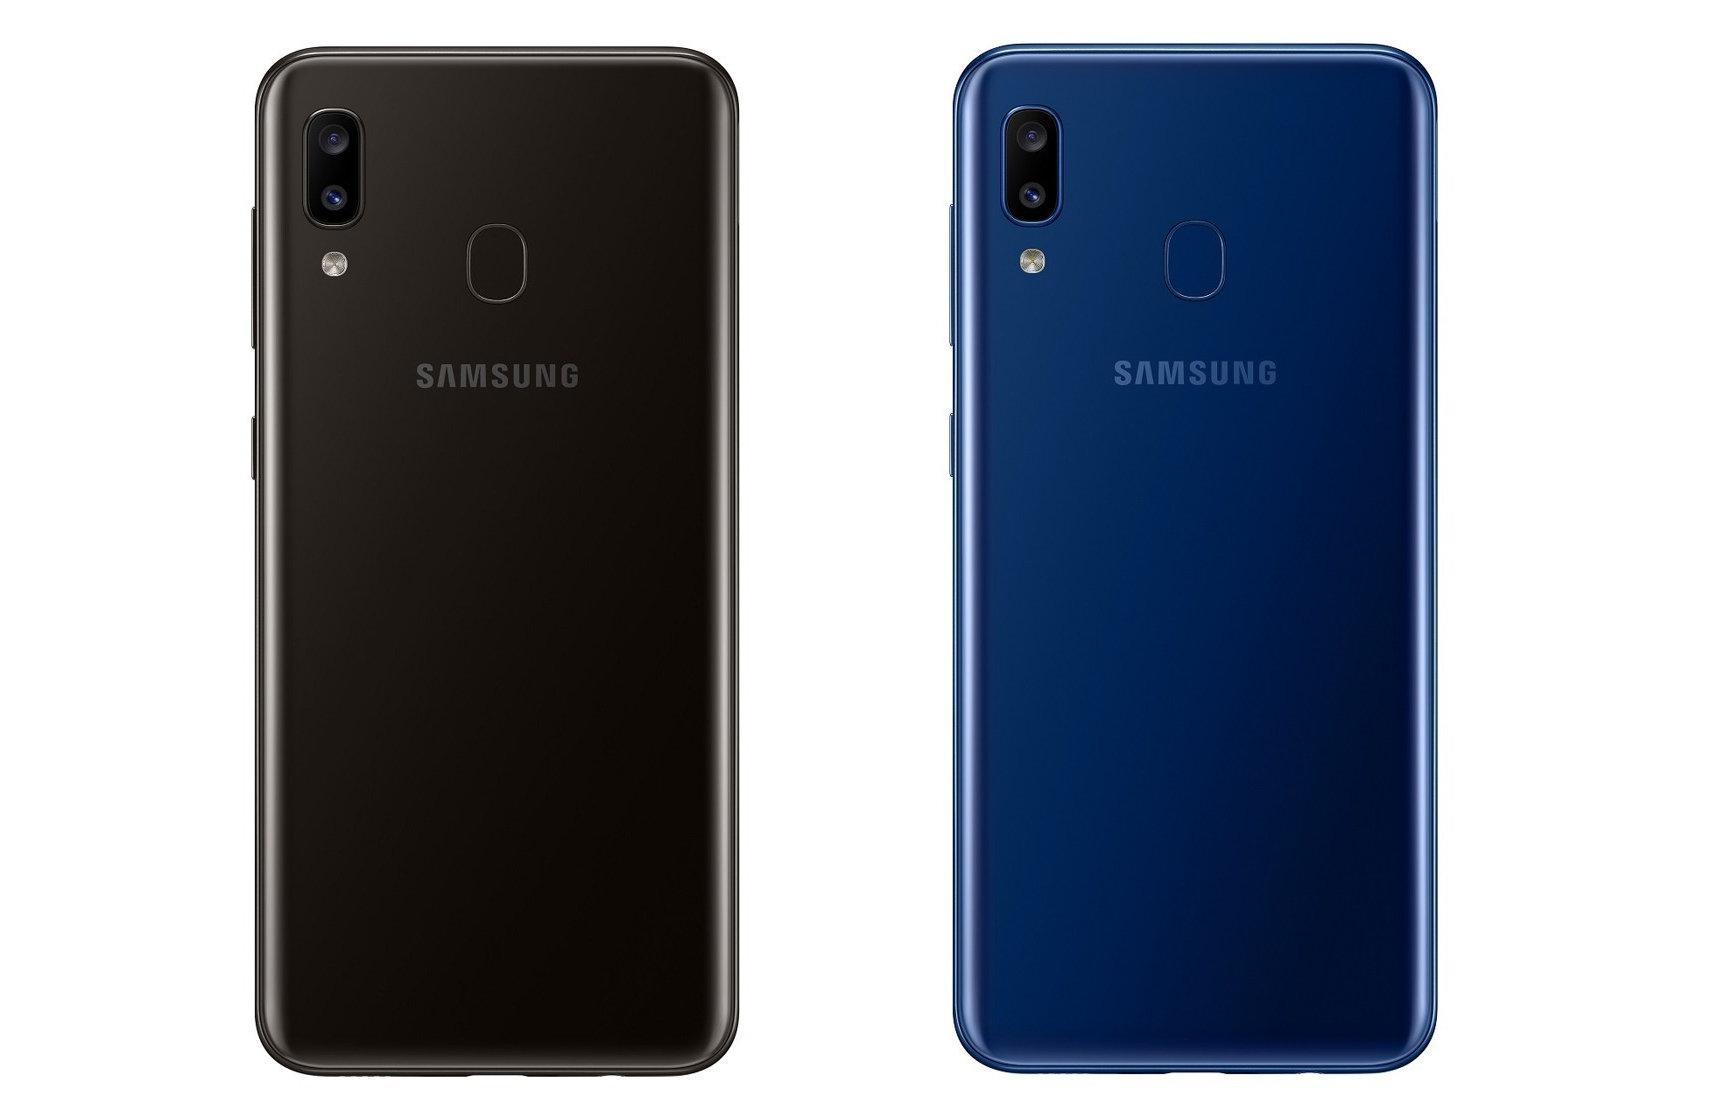 Samsung Galaxy A20 स्मार्टफोन को लाँच कर दिया गया हैं